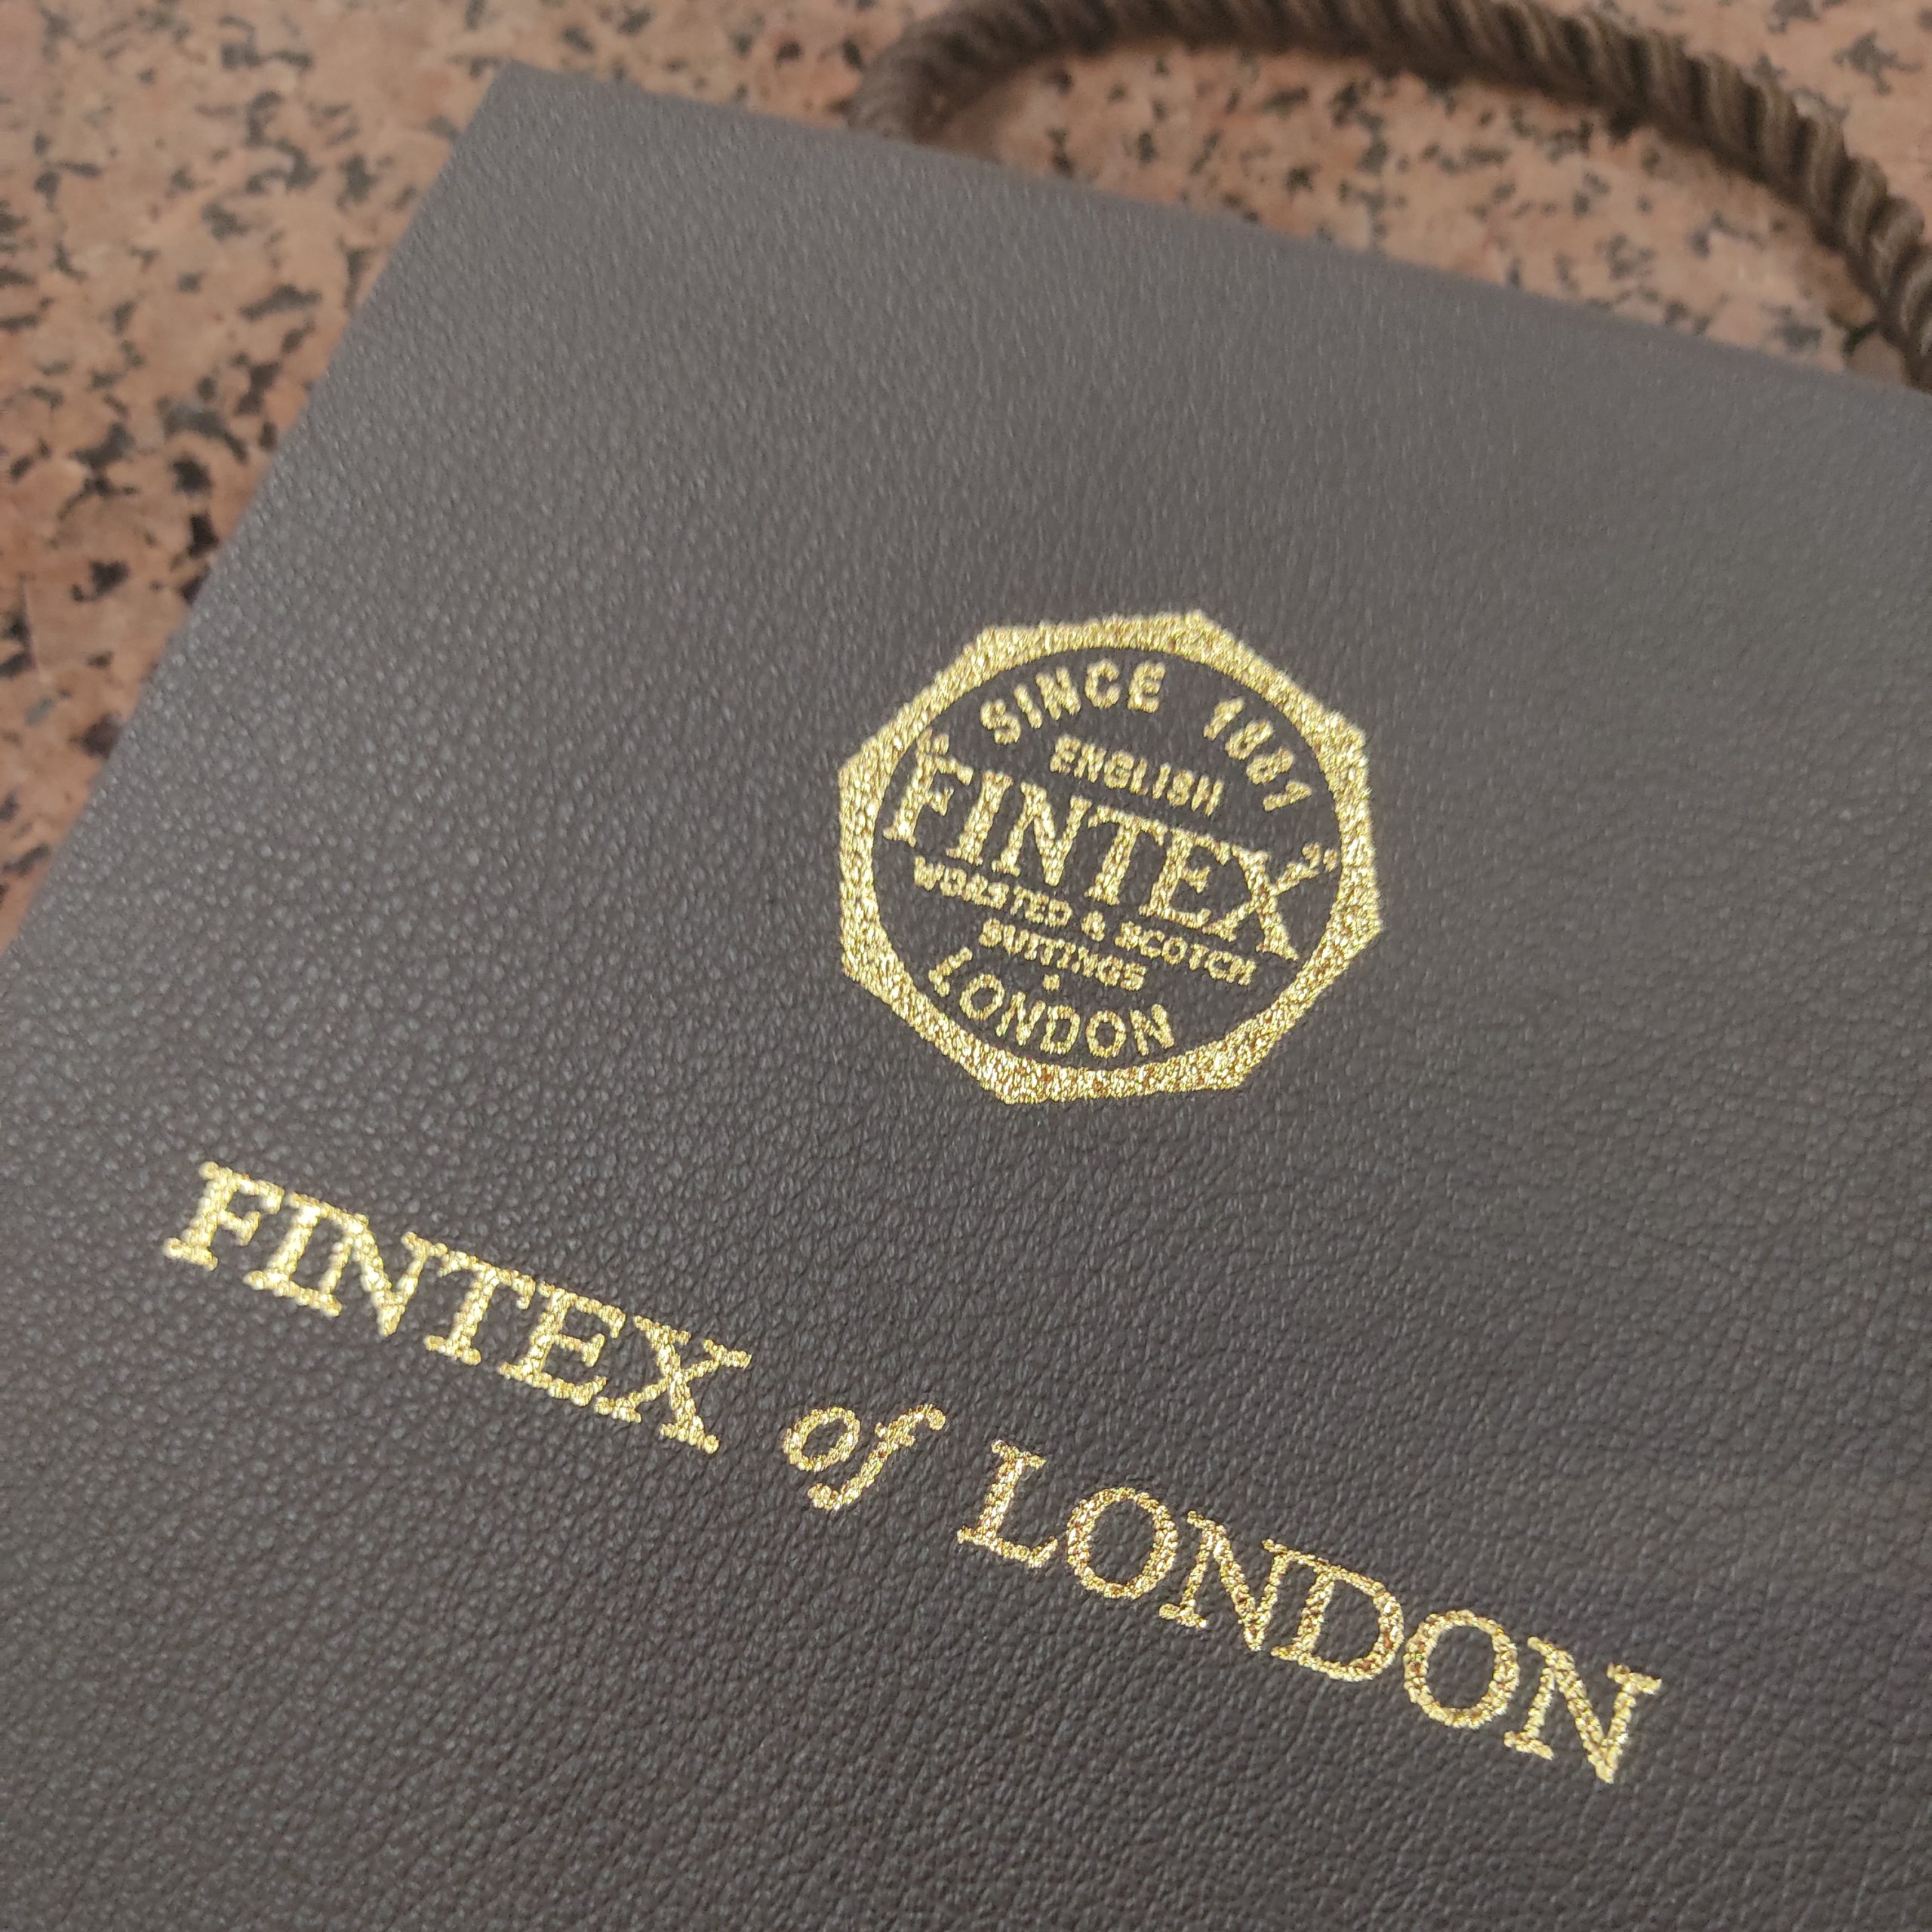 FINTEX of LONDON（フィンテックス）』本物志向の人がオーダーする 